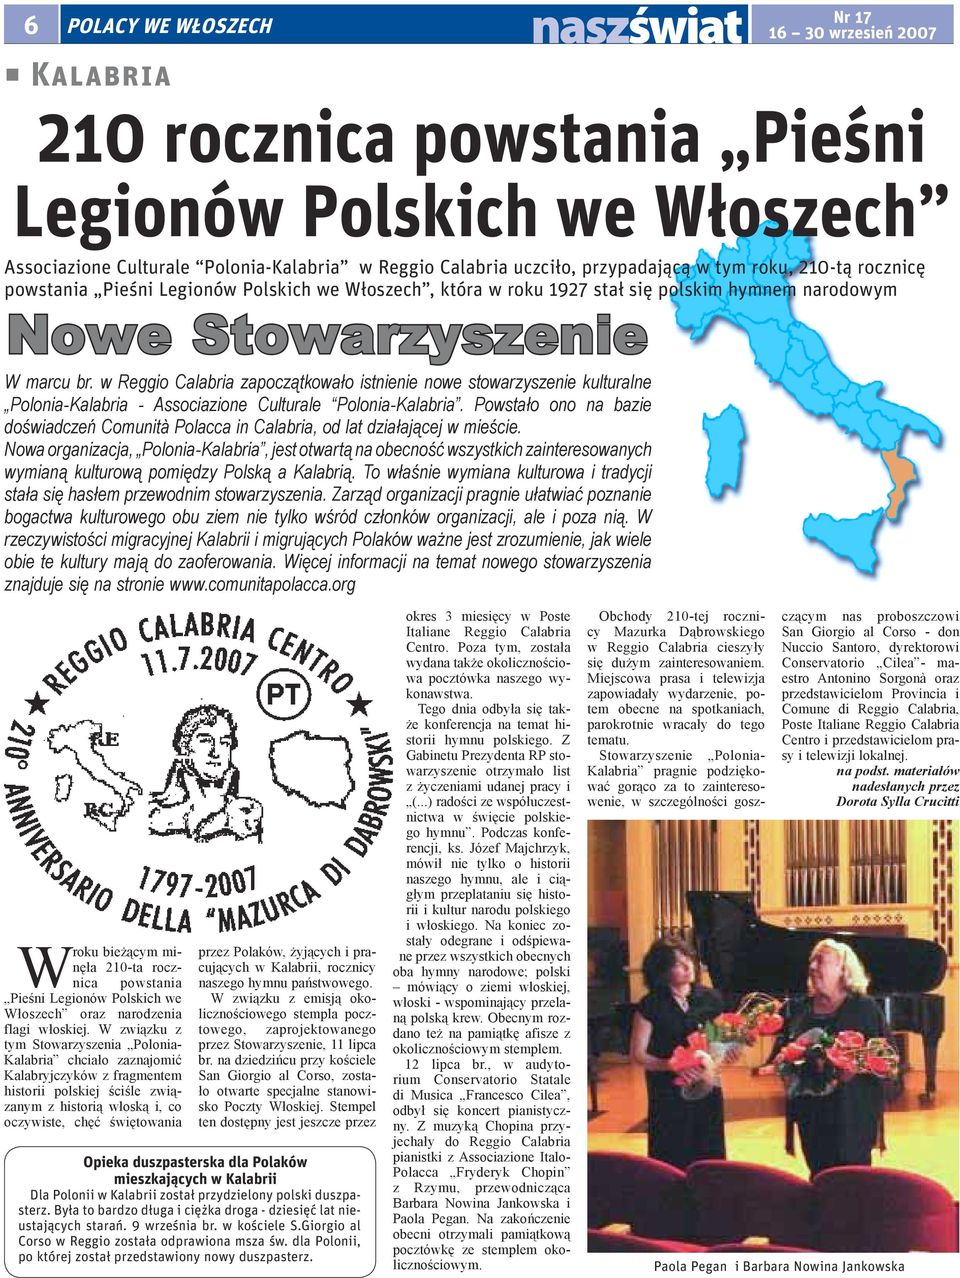 w Reggio Calabria zapoczątkowało istnienie nowe stowarzyszenie kulturalne Polonia-Kalabria - Associazione Culturale Polonia-Kalabria.